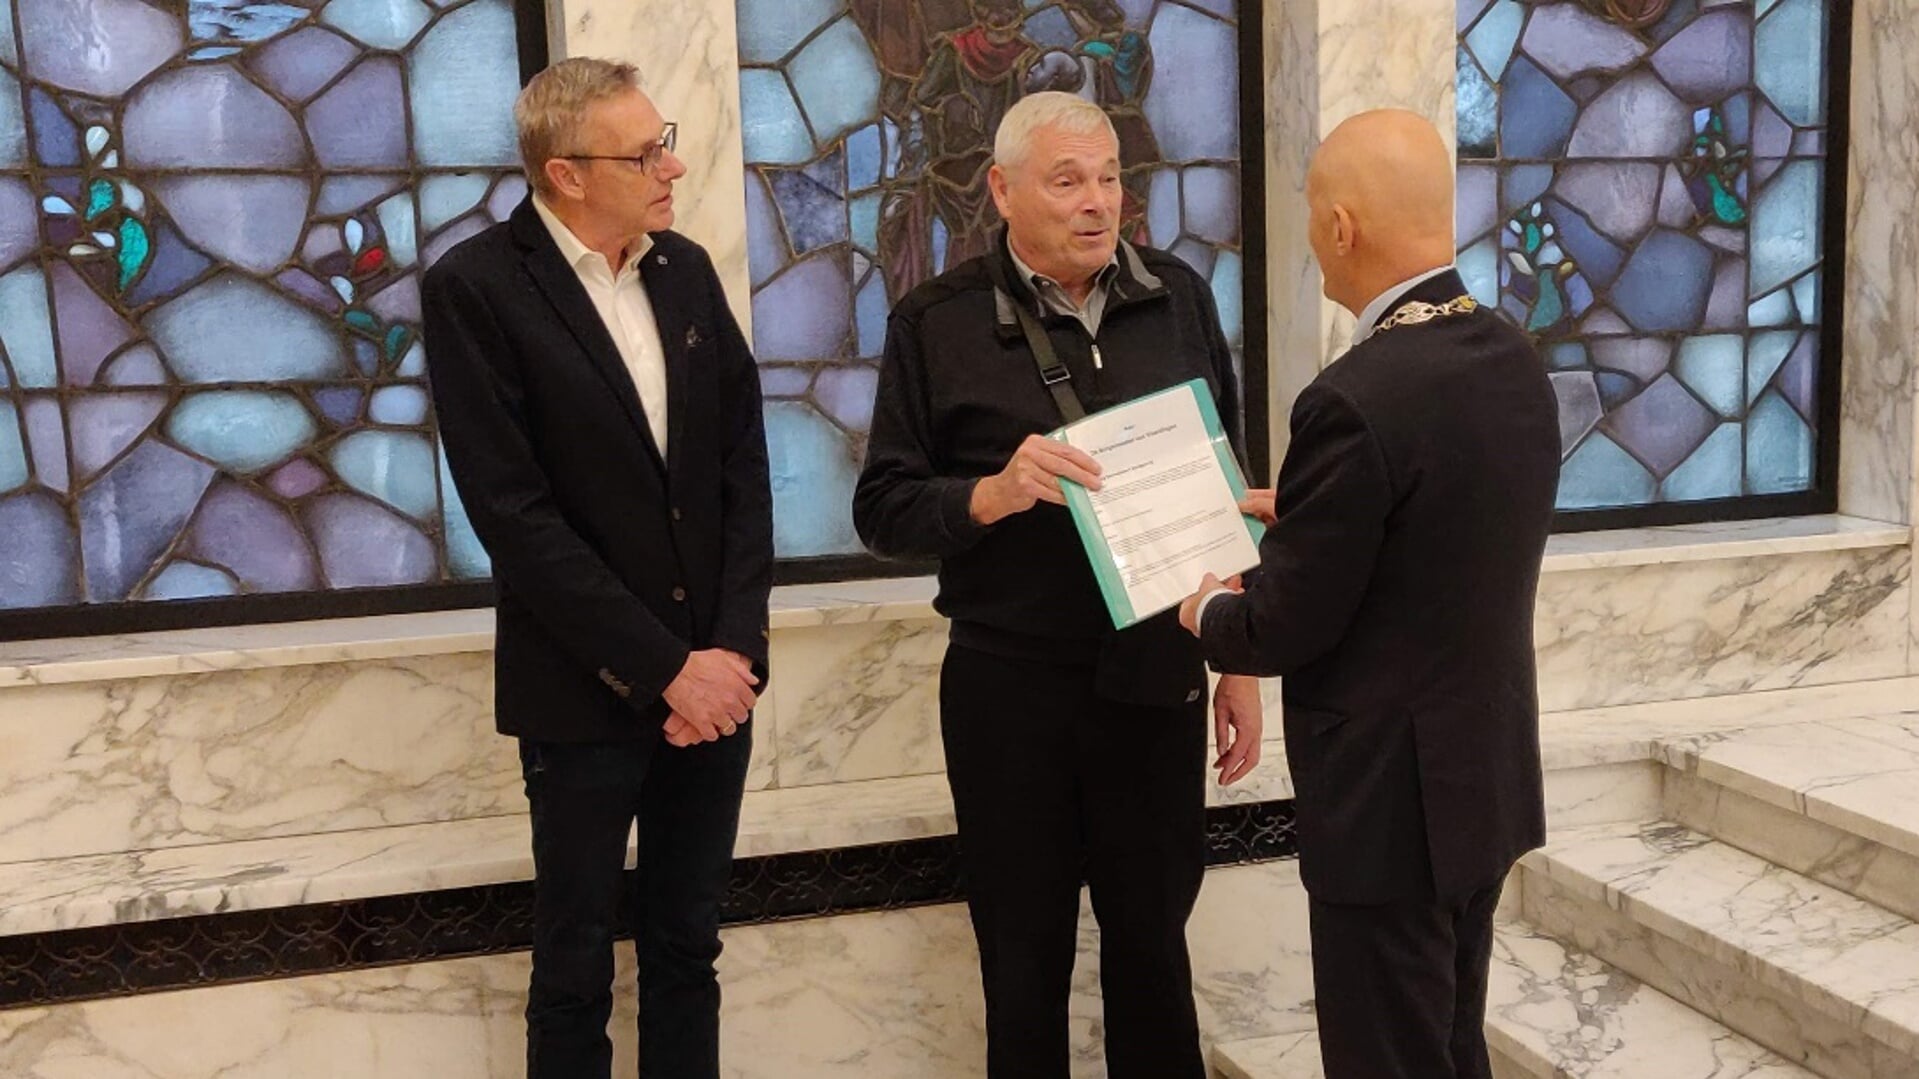 Burgemeester Wijbenga ontvangt de petitie “Herbezinning Drevenbuurt aardgasvrij” uit handen van Henk Maarleveld en Hans de Wid.